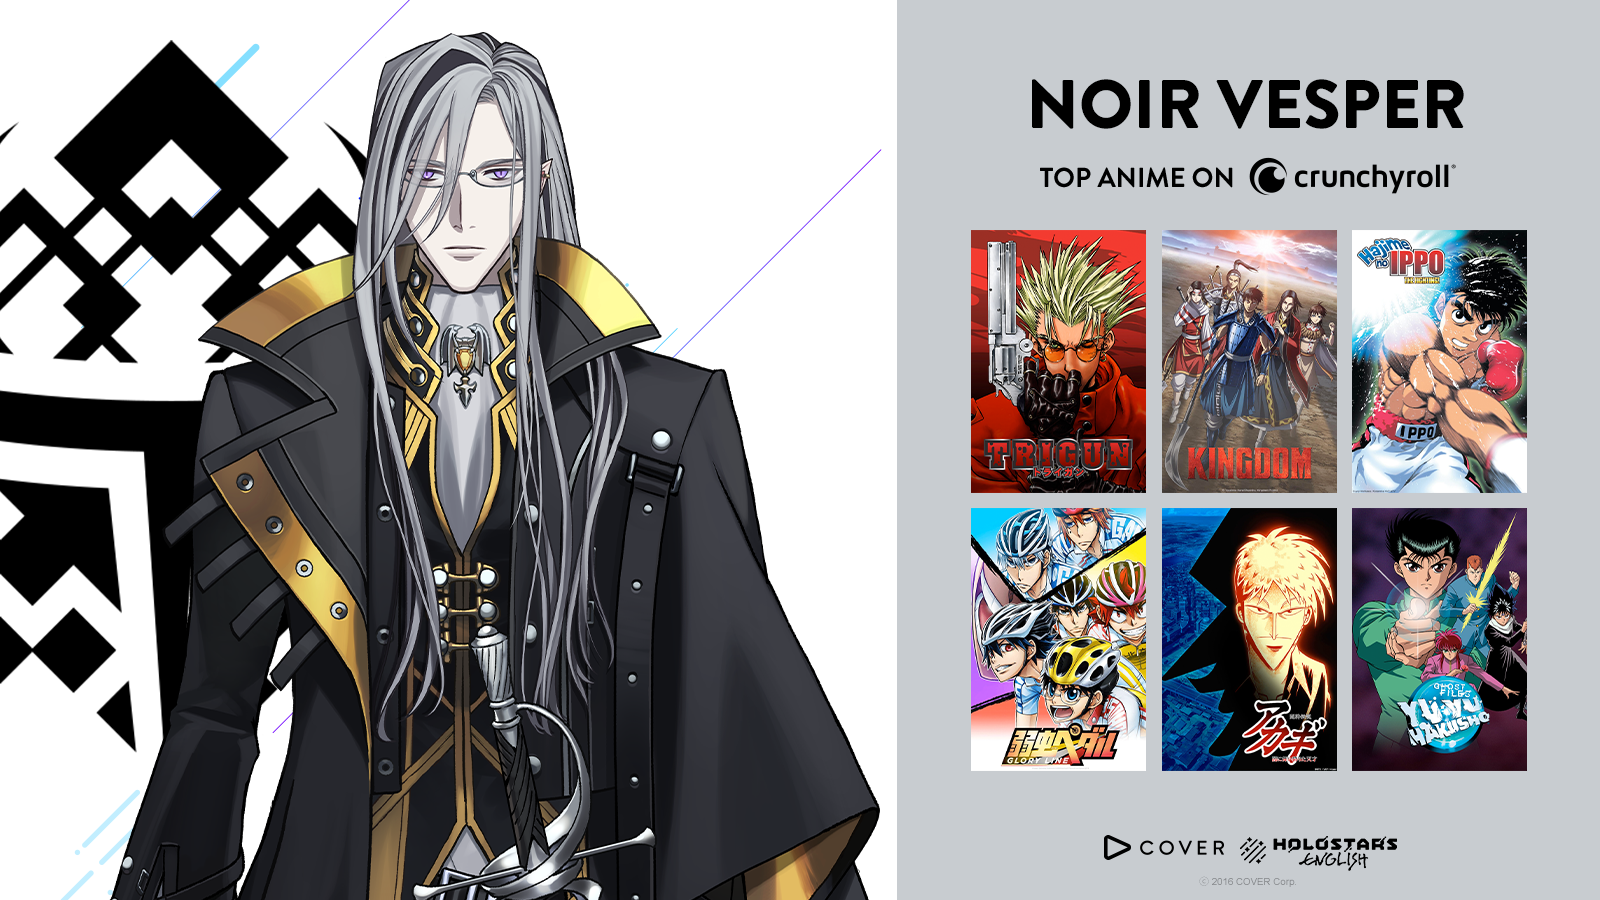 RECS: VTuber Noir Vesper Shares His Top 10 Anime